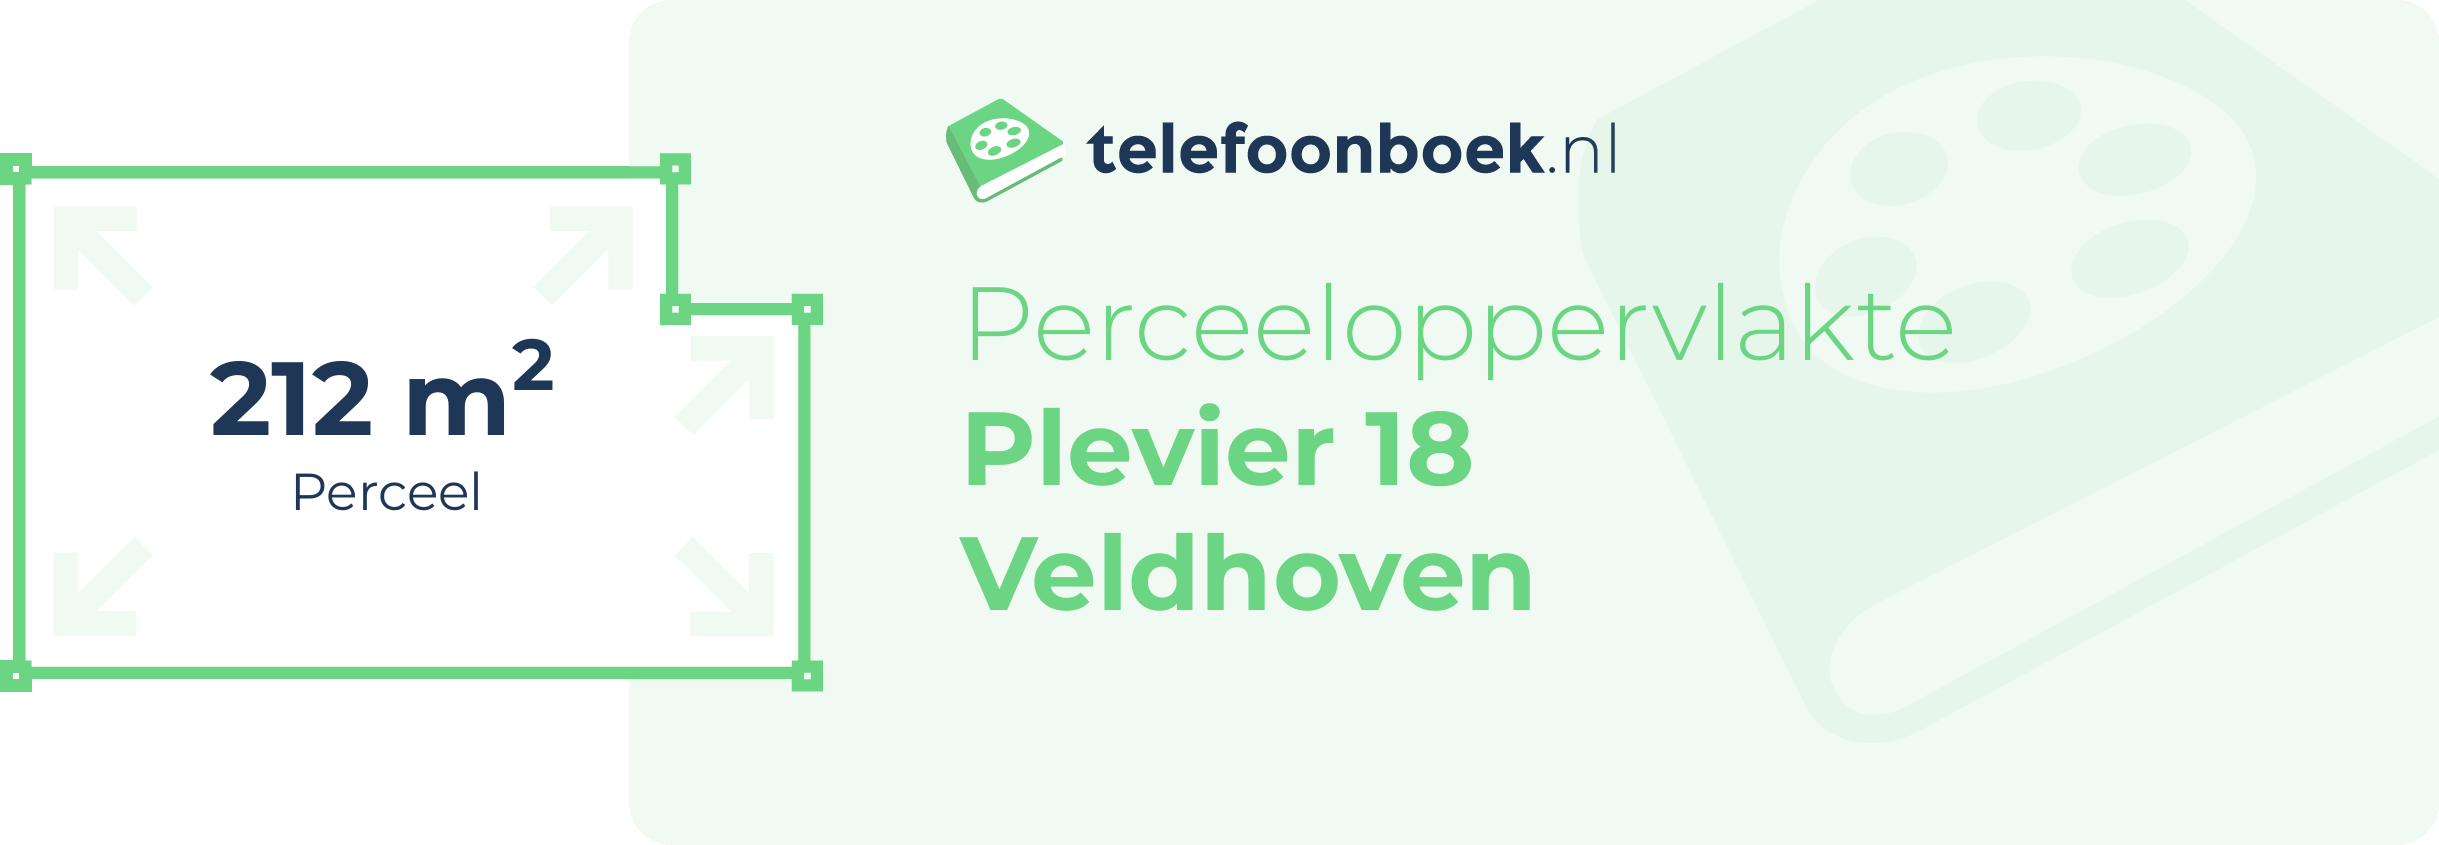 Perceeloppervlakte Plevier 18 Veldhoven